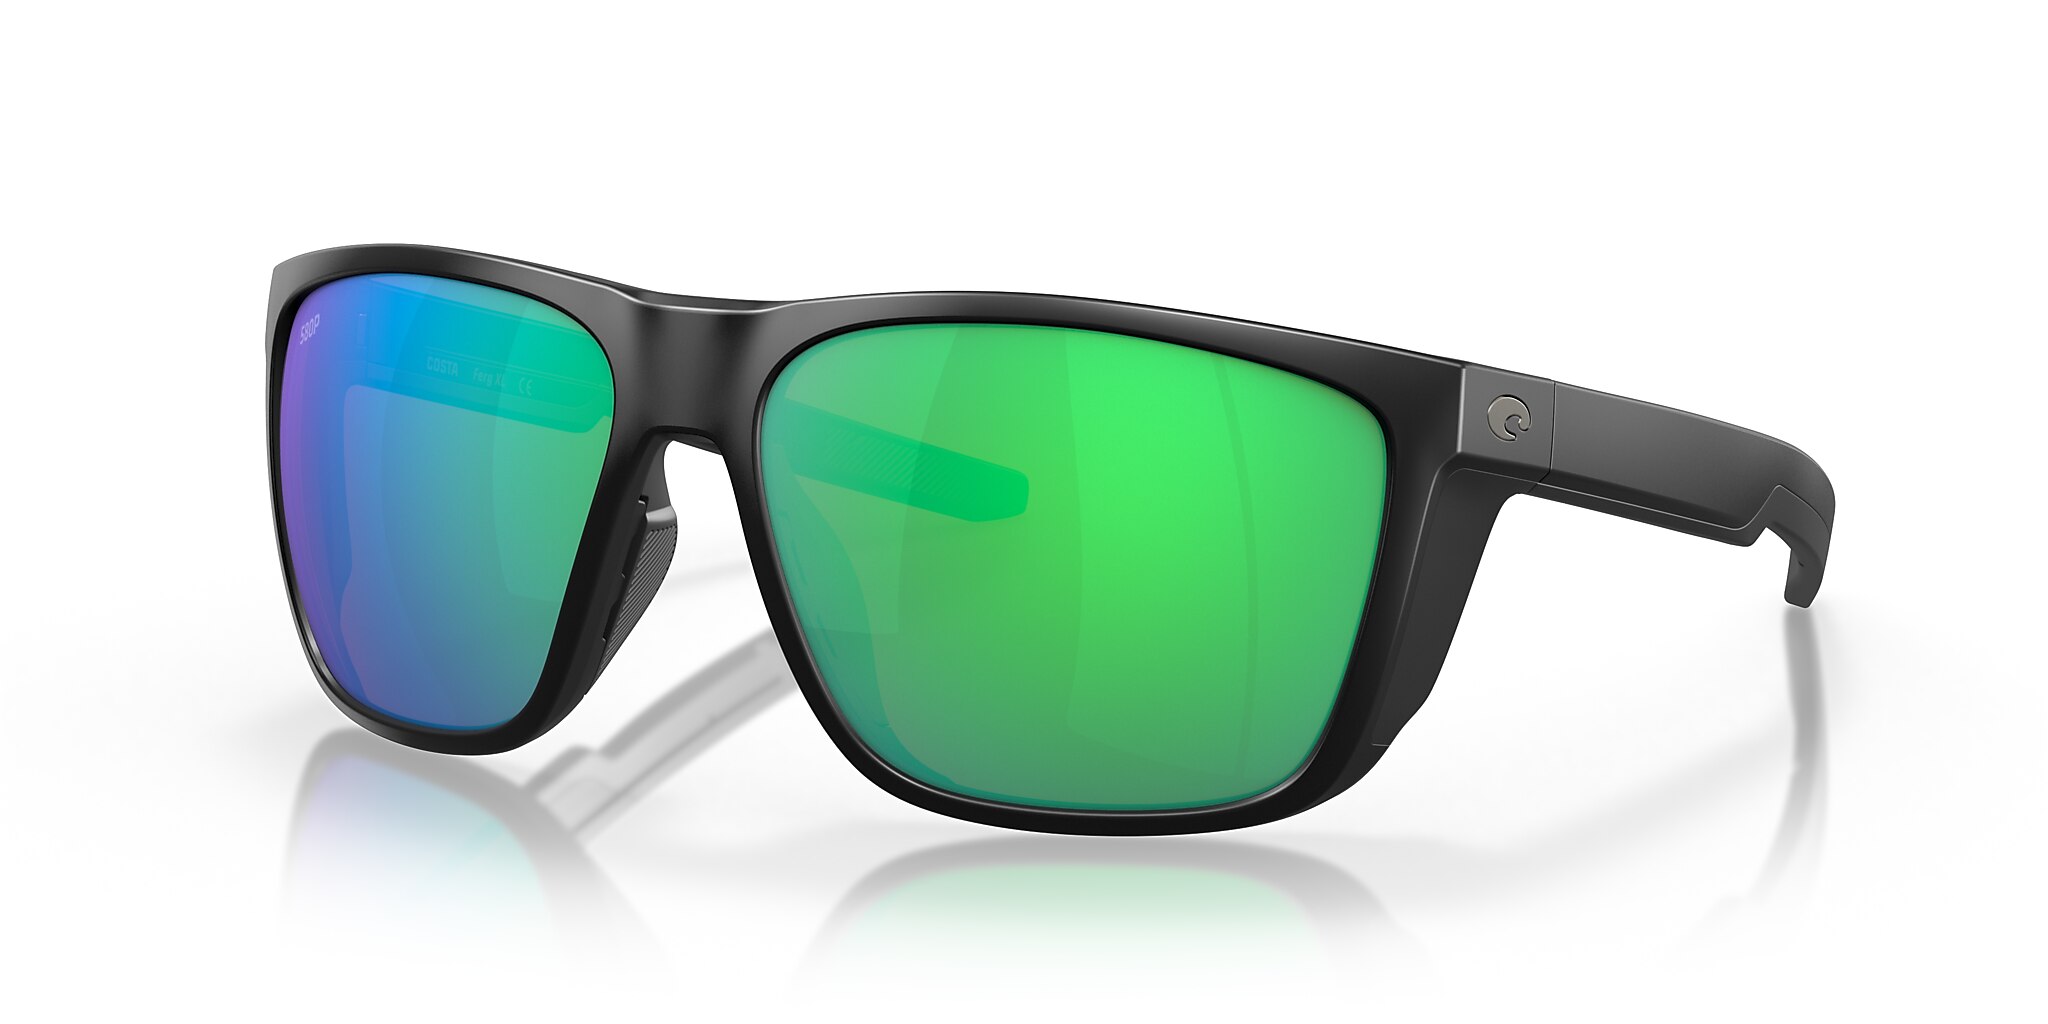 Ferg XL Polarized Sunglasses in Green Mirror | Costa Del Mar®